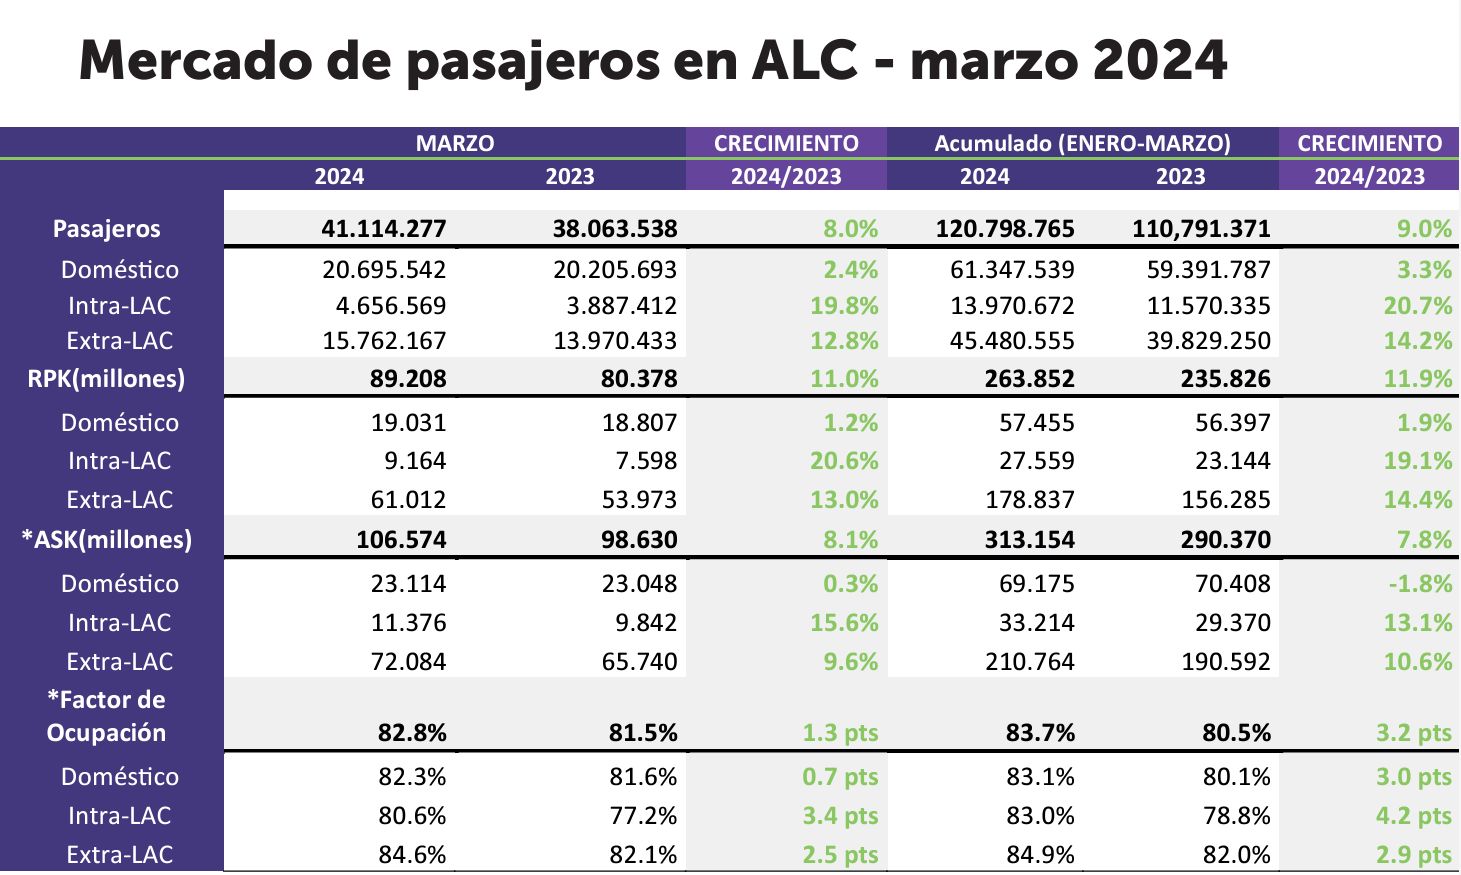 ALTA NEWS - Colombia, Chile, Perú y Brasil impulsan crecimiento de la aviación regional en el primer trimestre de 2024